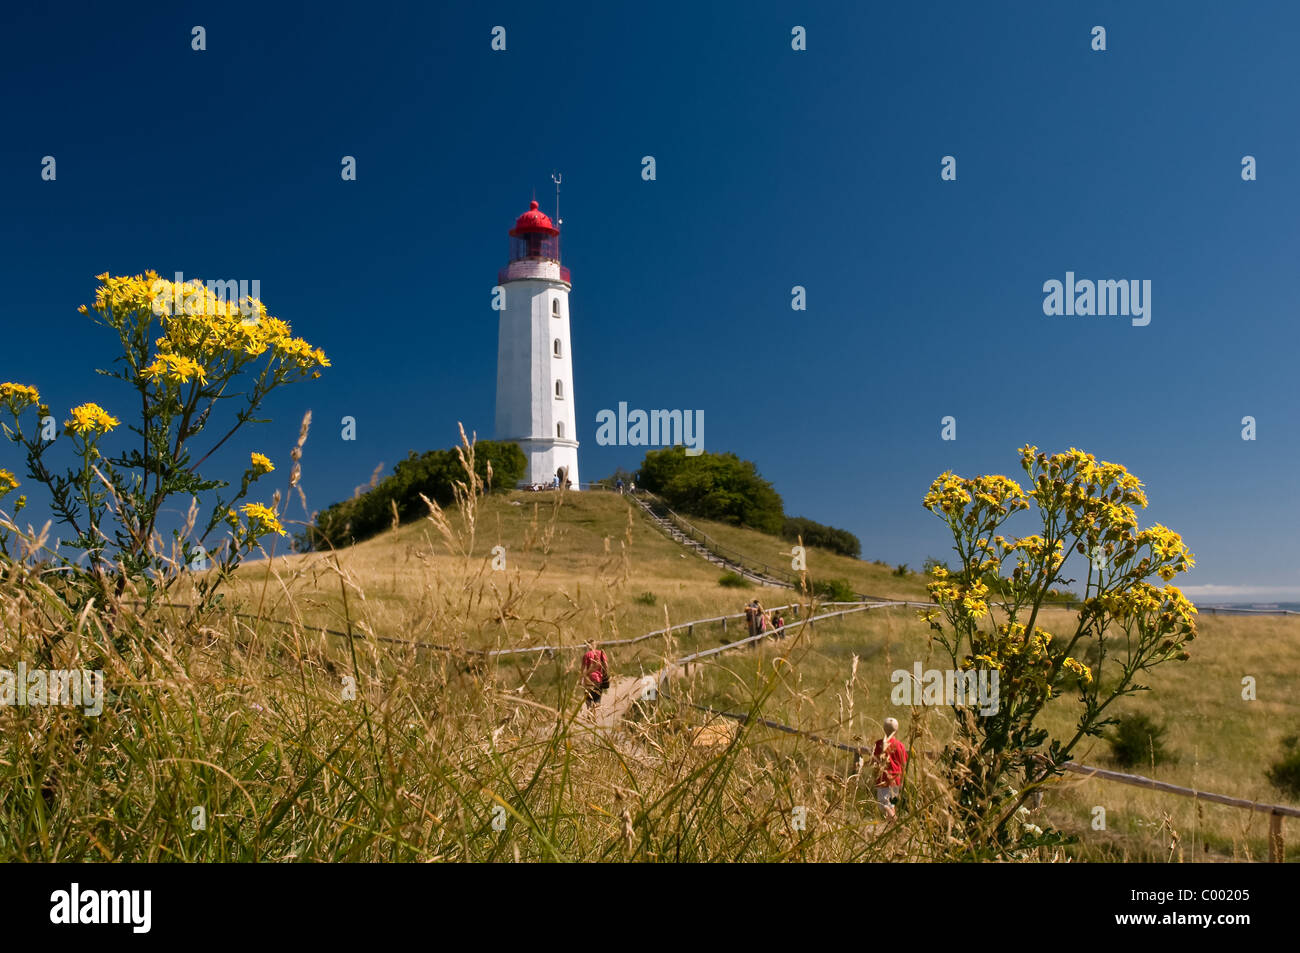 Le célèbre phare sur l'île de Hiddensee, mer Baltique, Allemagne Banque D'Images